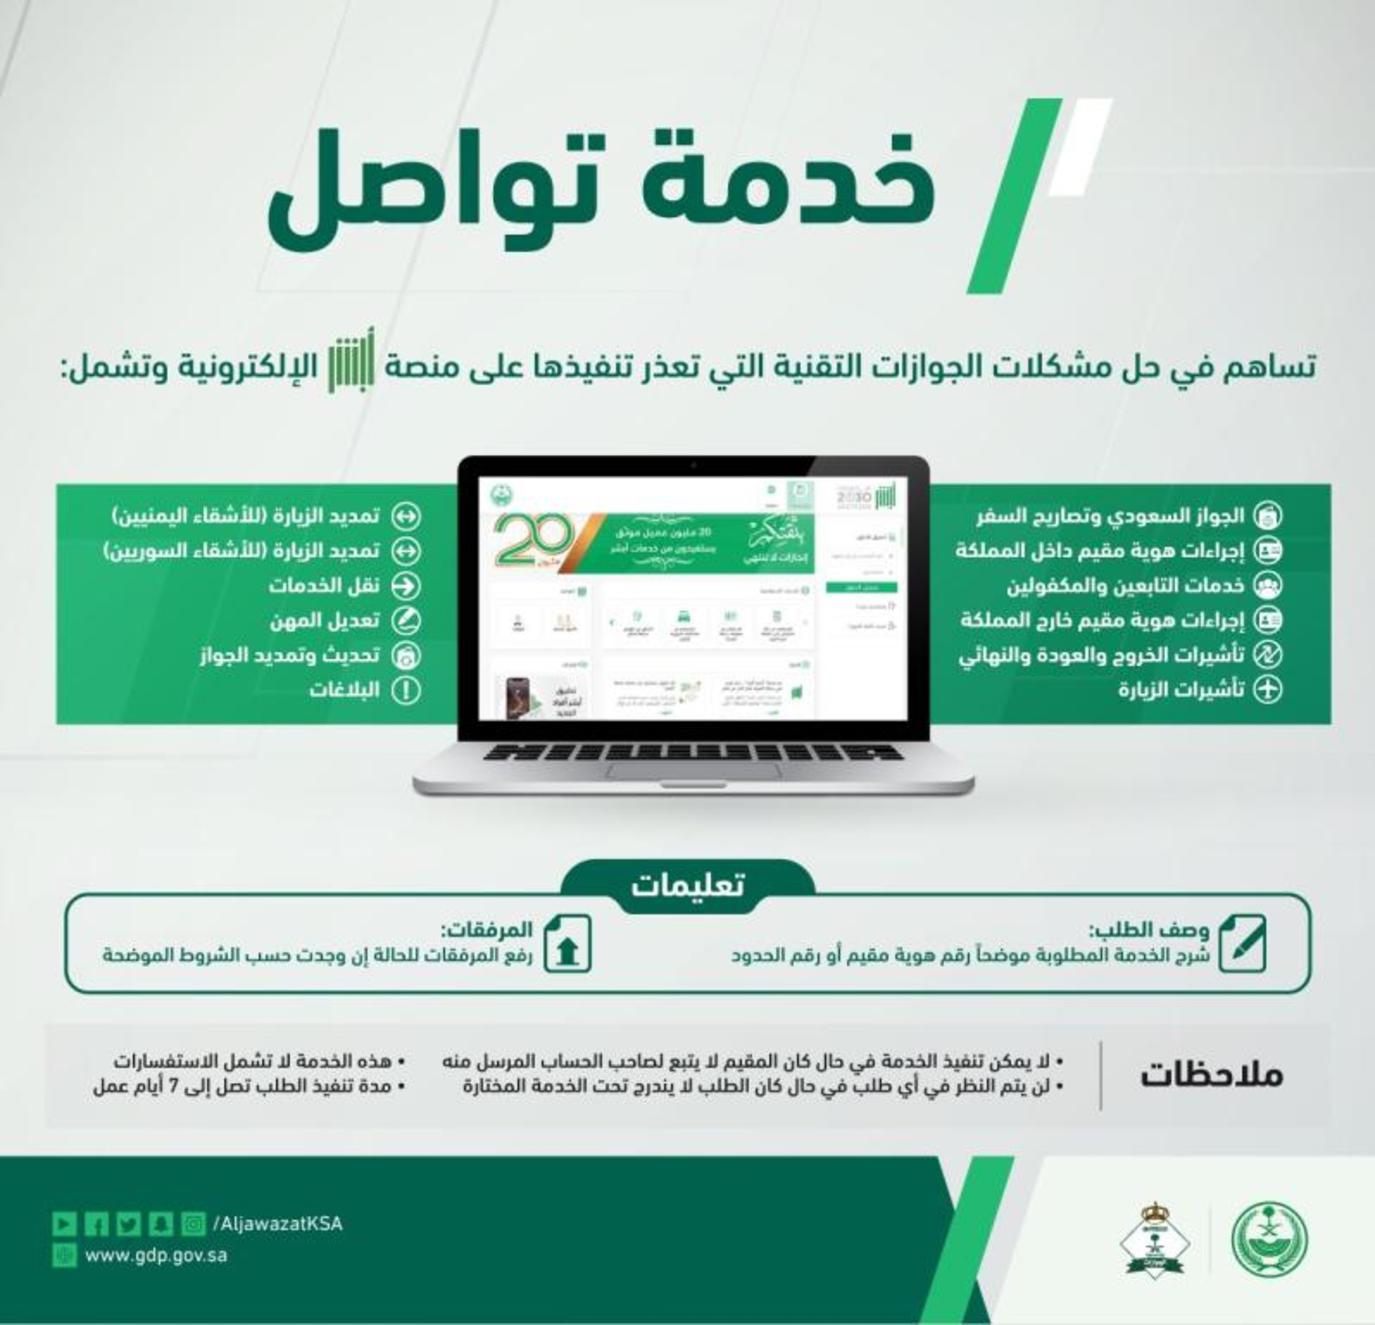 الجوازات السعودية تغير مسمى خدمة الرسائل و الطلبات إلى خدمة تواصل | مجلة سيدتي